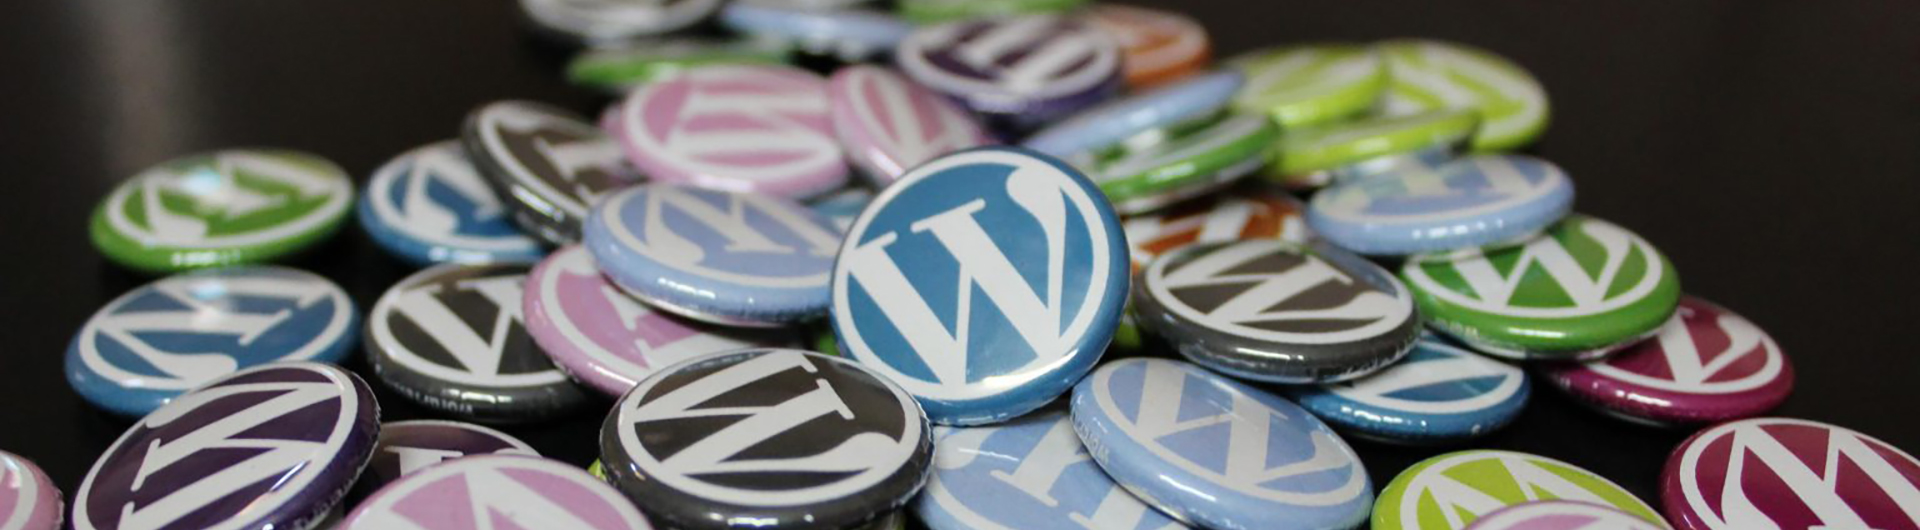 20 Years of WordPress